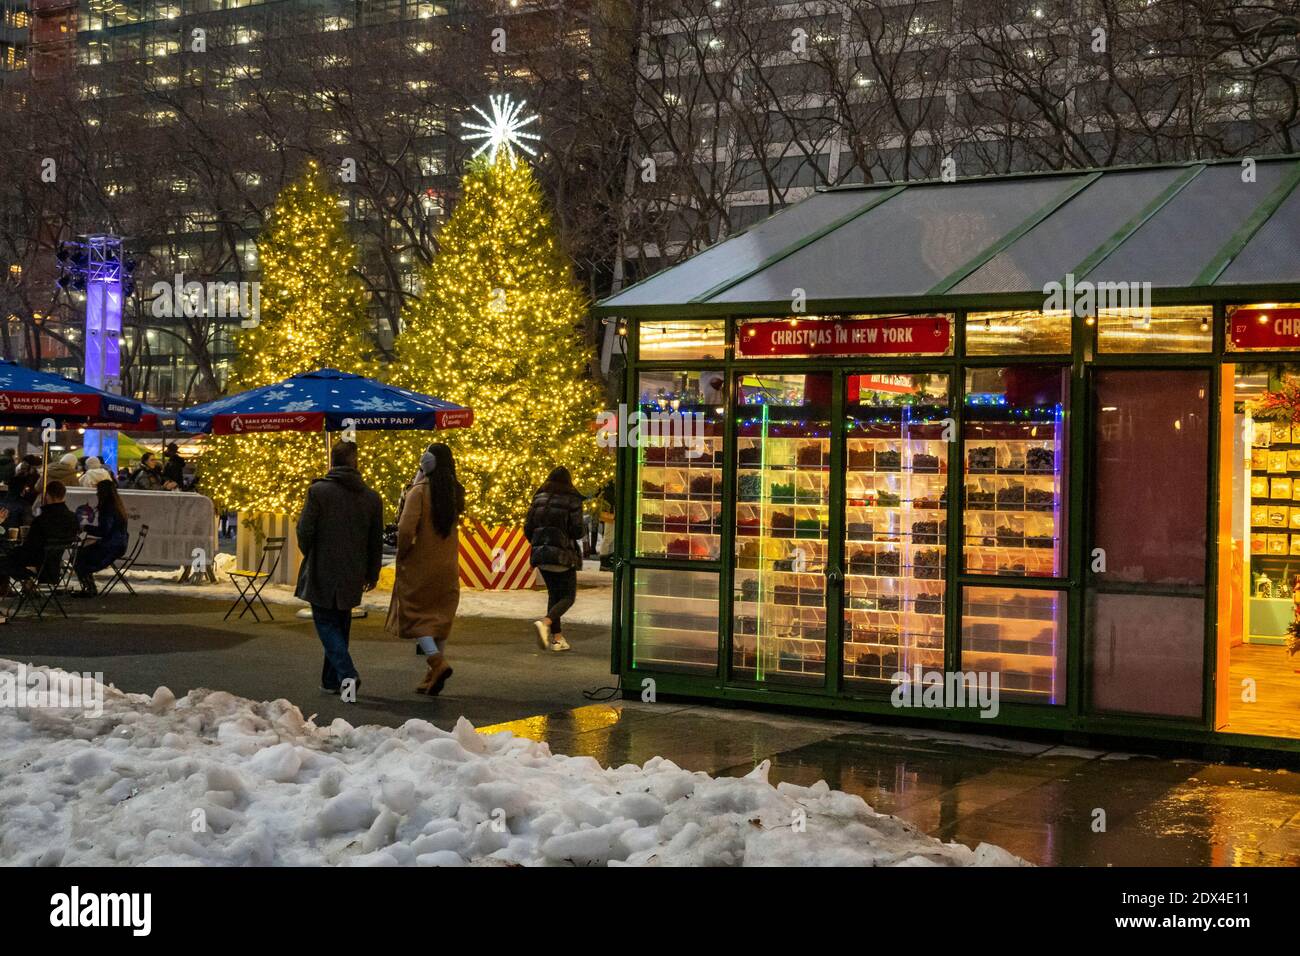 Les gens qui apprécient les arbres de Noël illuminés dans le village de vacances de Bryant Park lors d'une soirée hivernale, New York City, États-Unis Banque D'Images